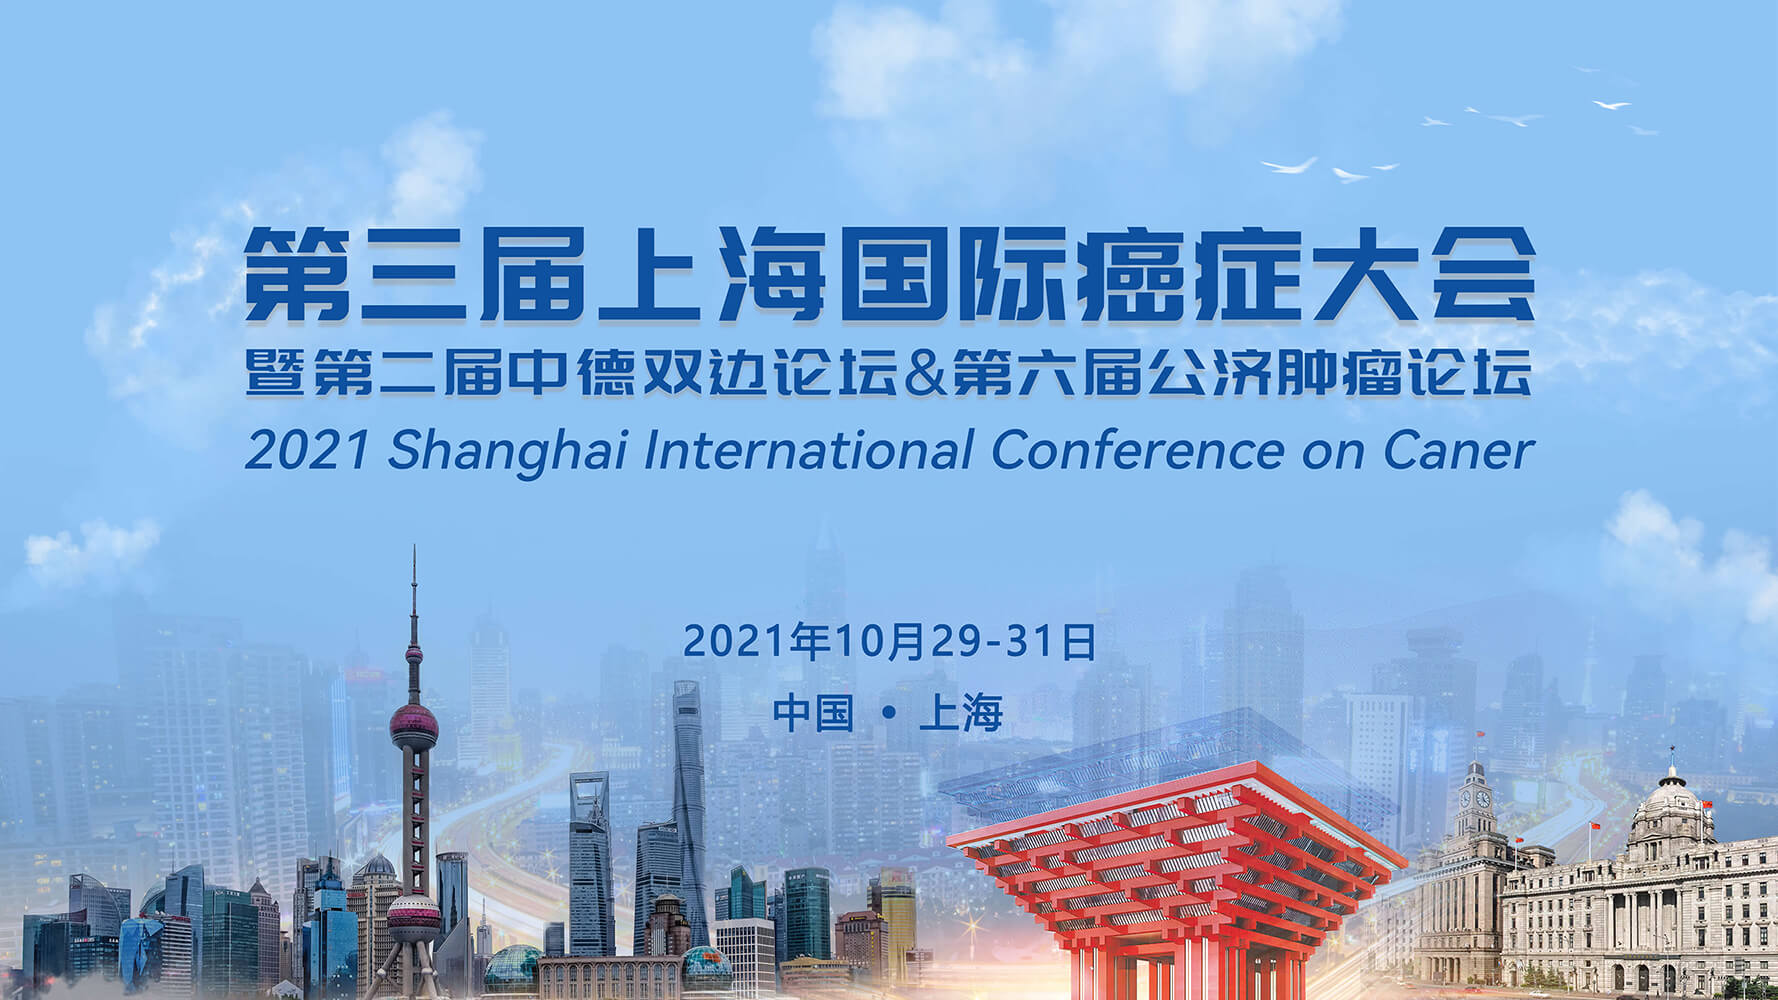 会议通知 | 美谷分子邀您共赴第三届上海国际癌症大会